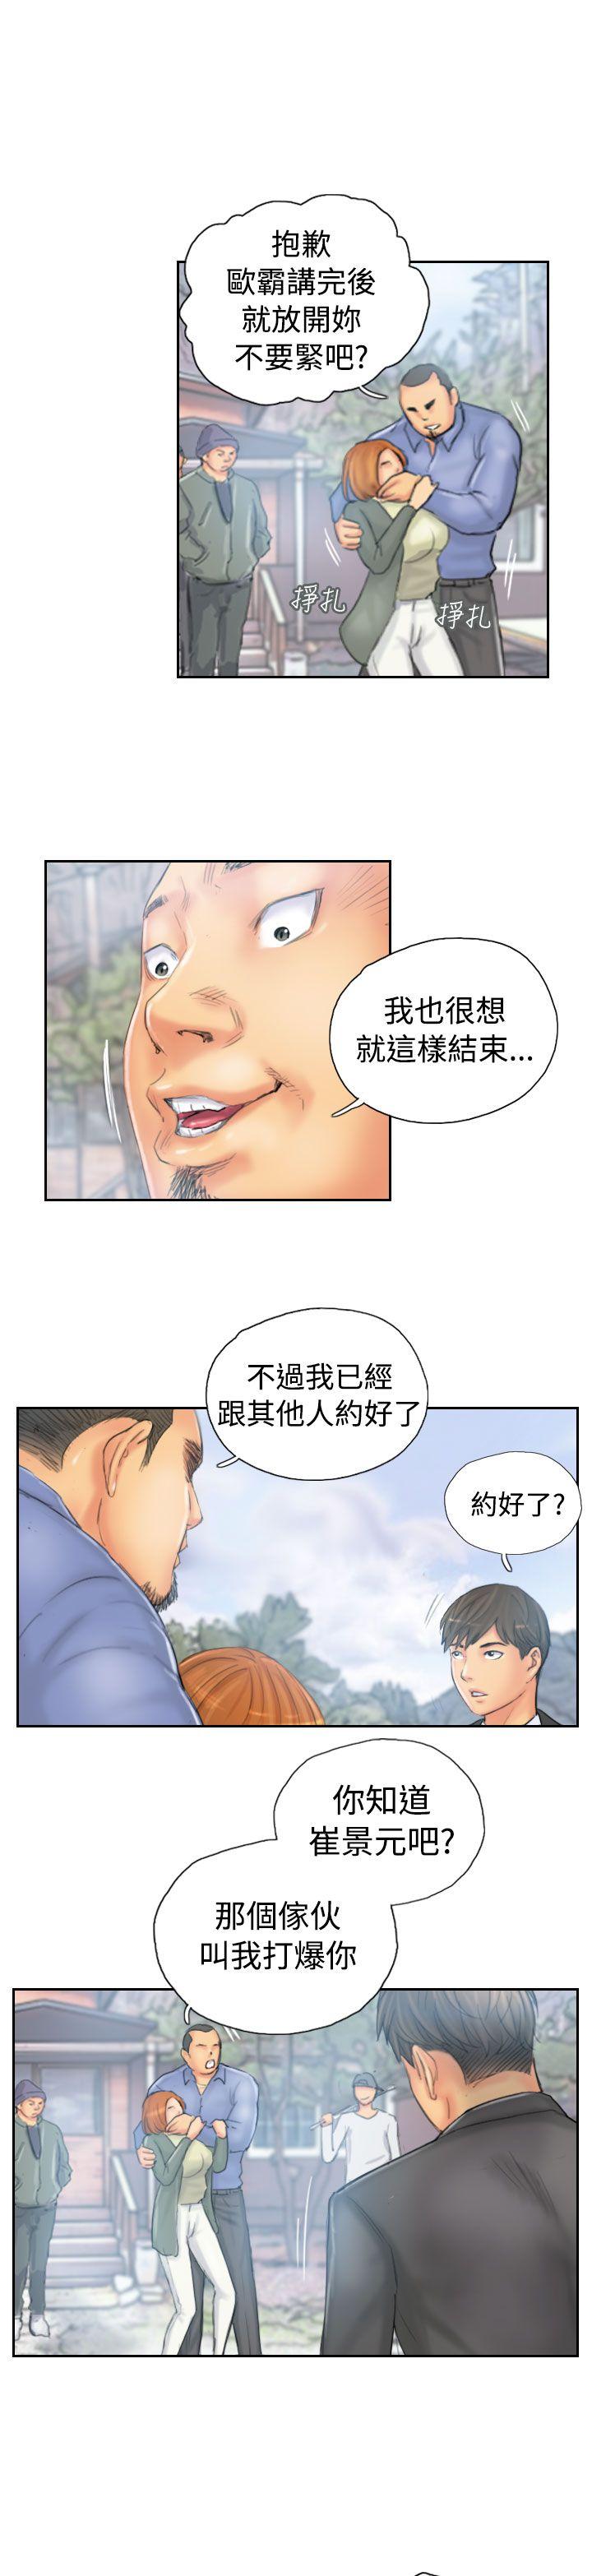 韩国污漫画 NEW FACE 第36话 9